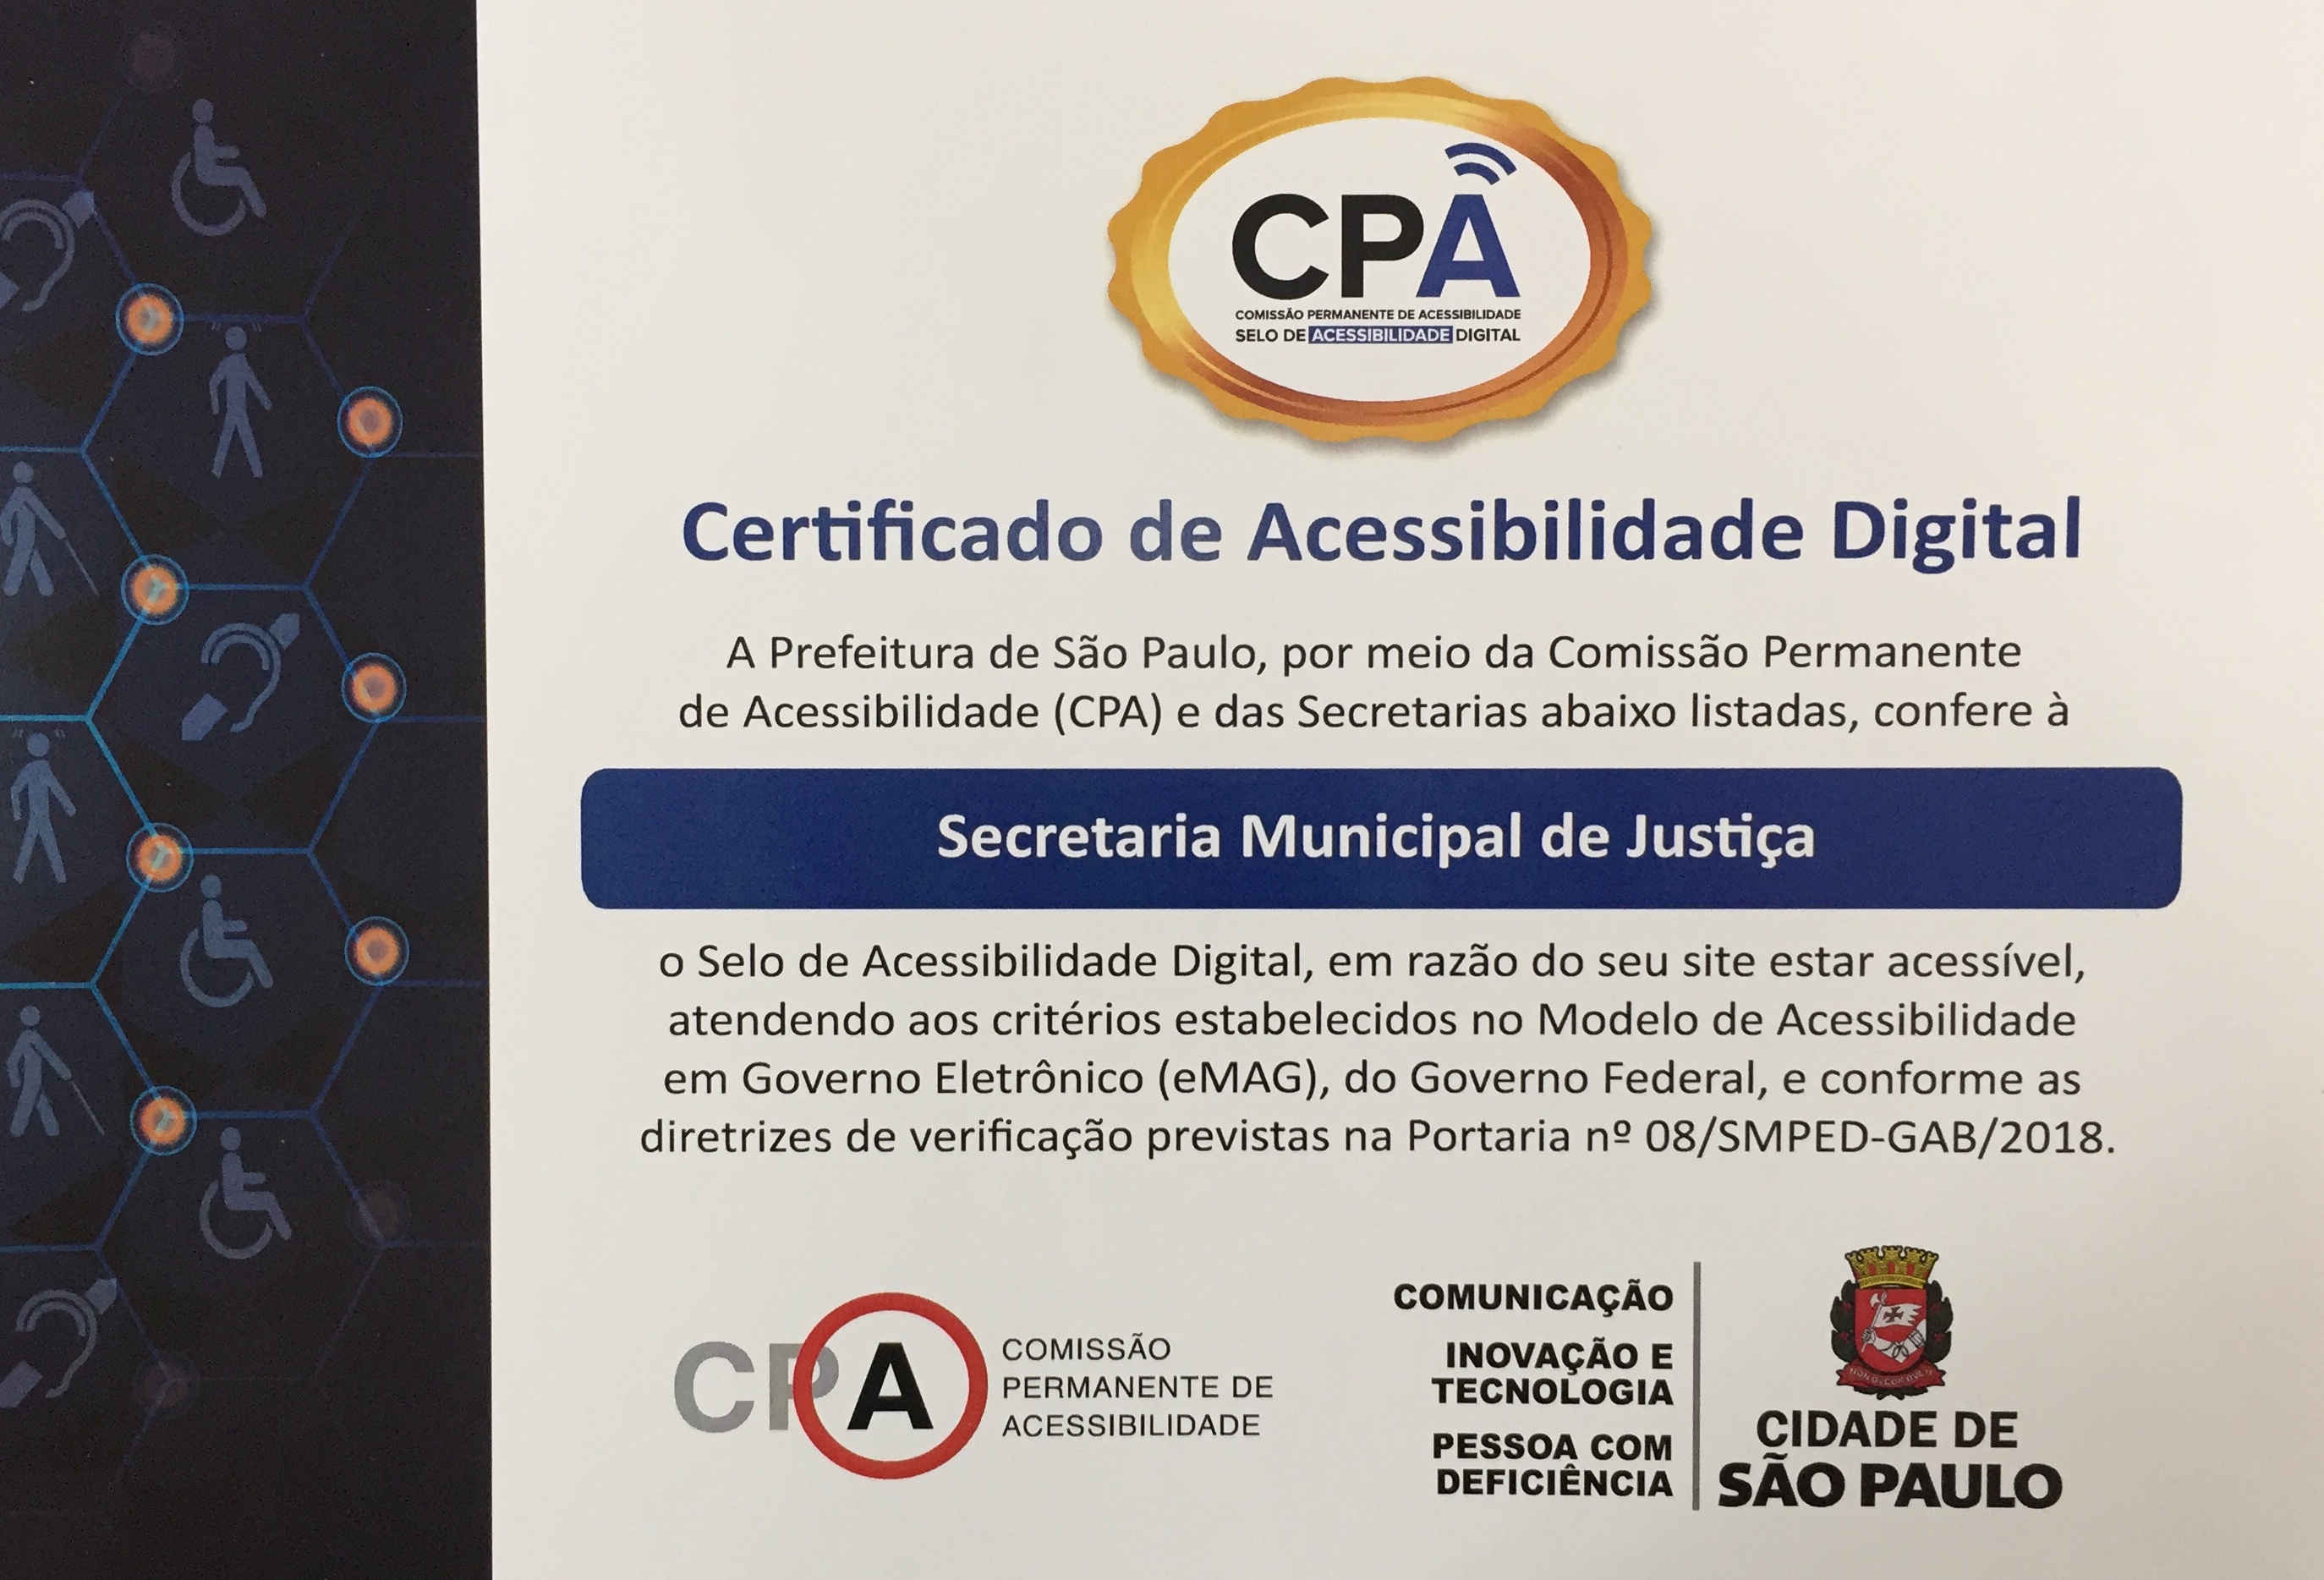 Foto do selo de acessibilidade digital da Secretaria Municipal de Justiça